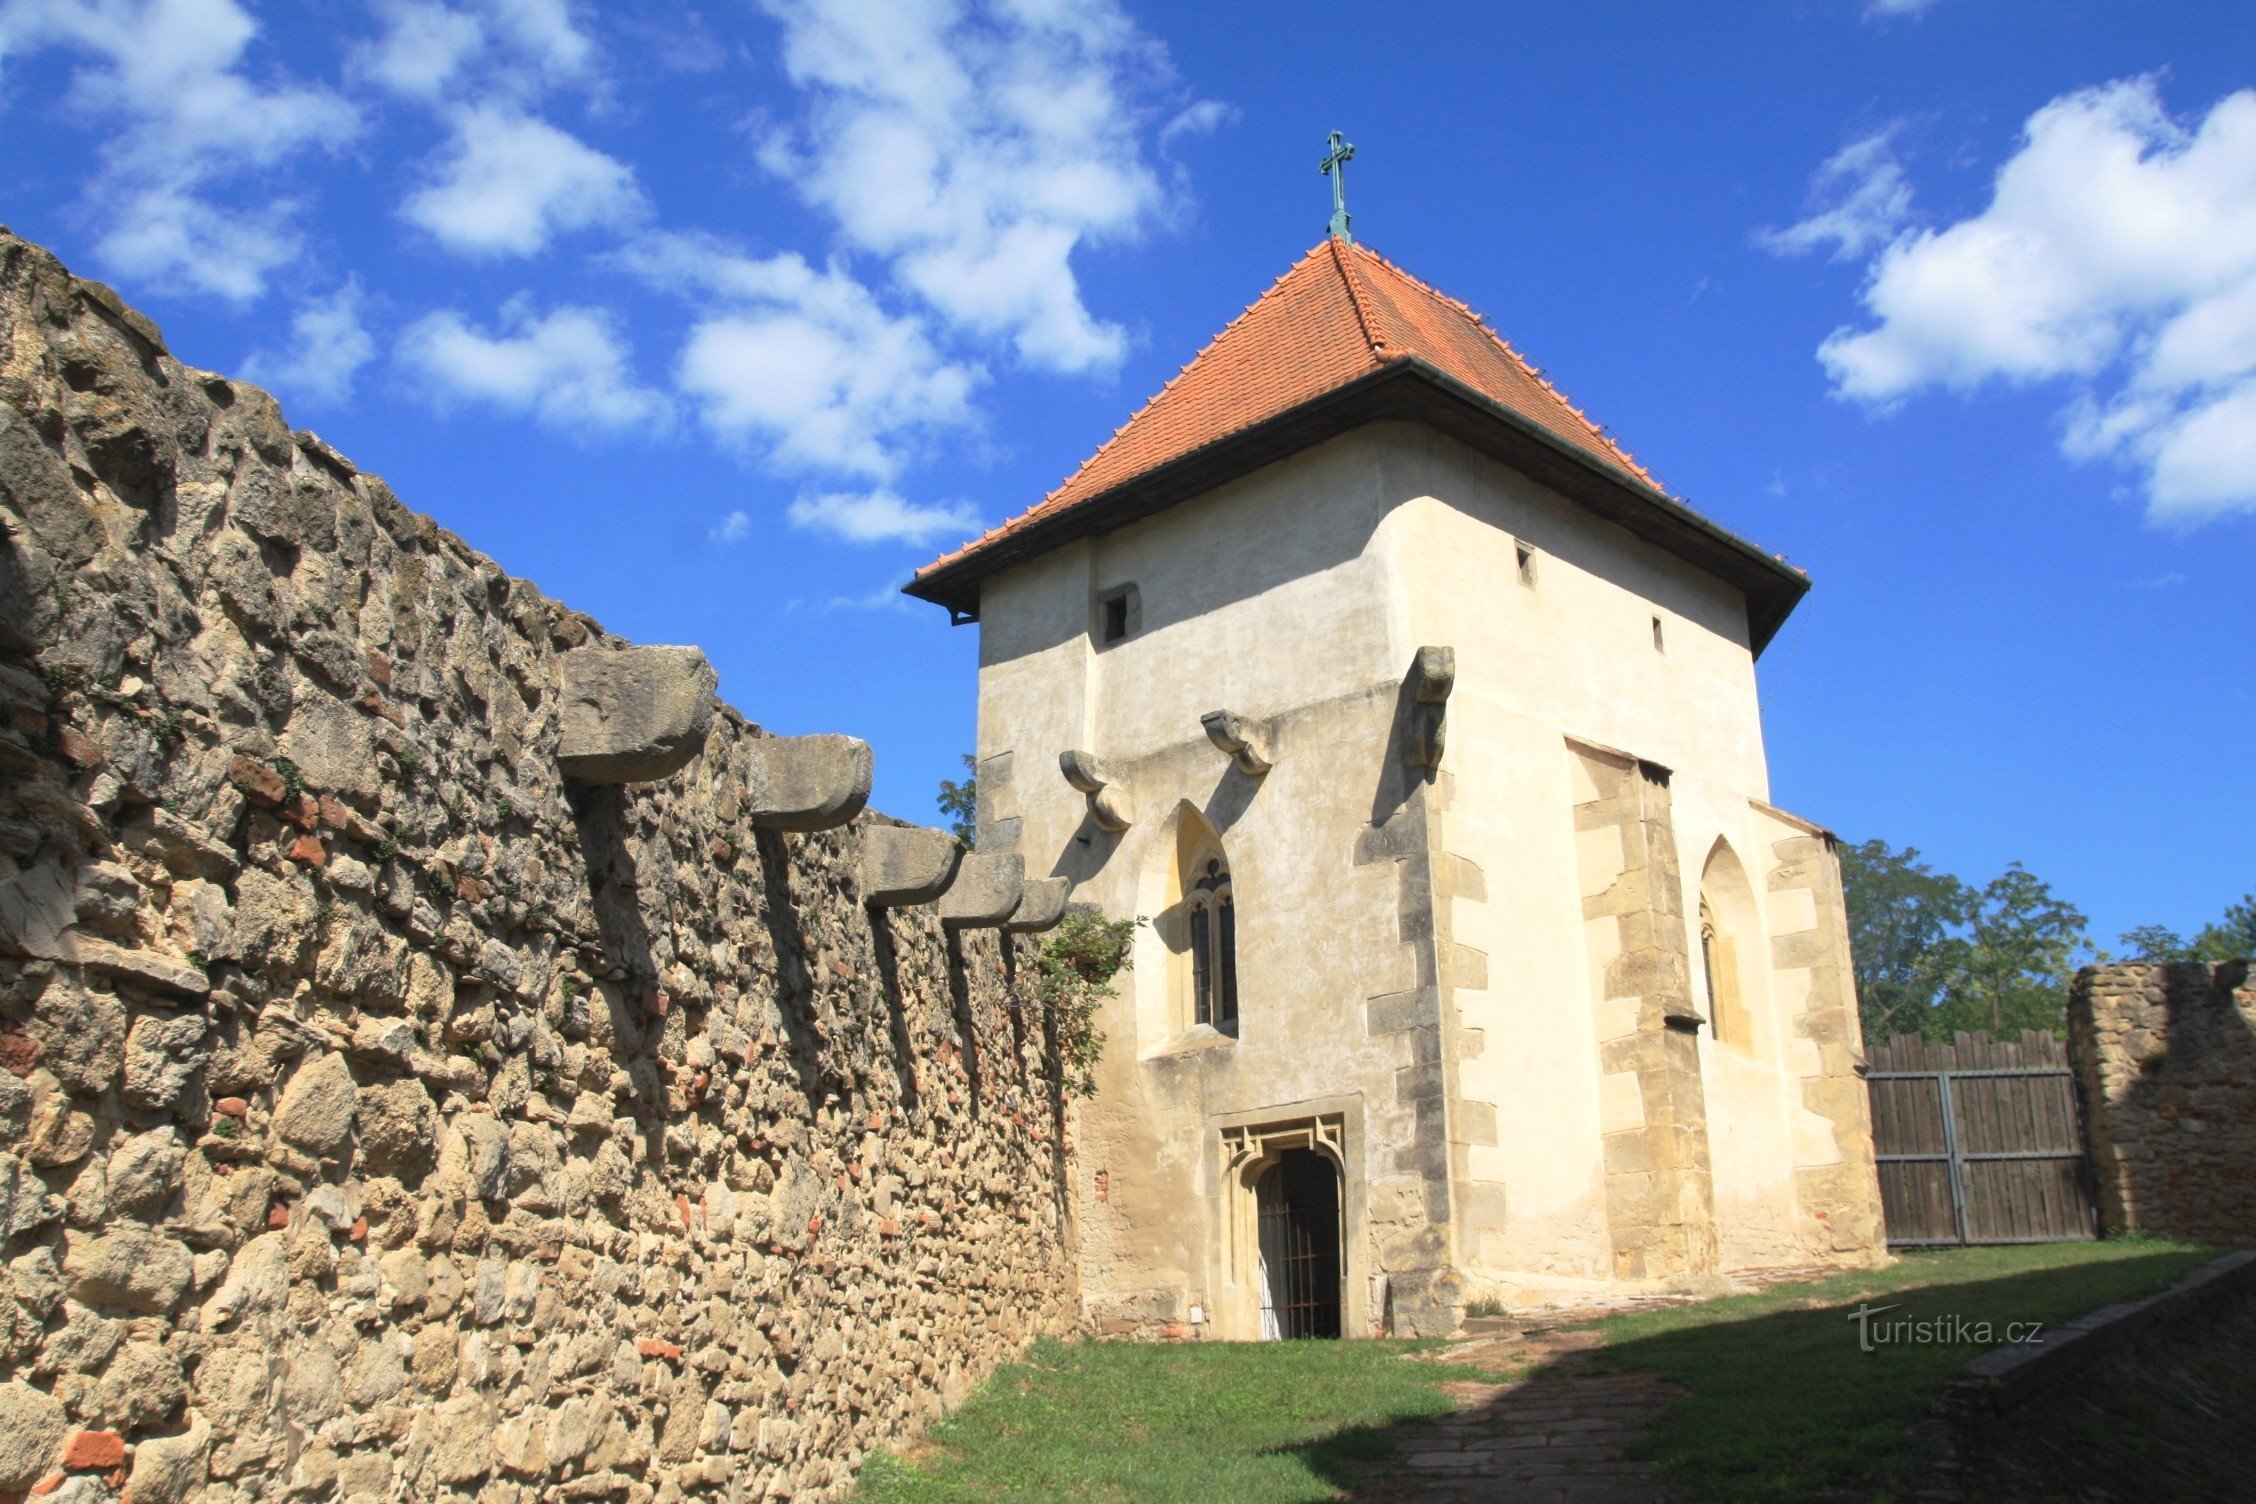 Kurdějov - Pyhän pyhän linnoitettu kirkko. Johannes Kastaja